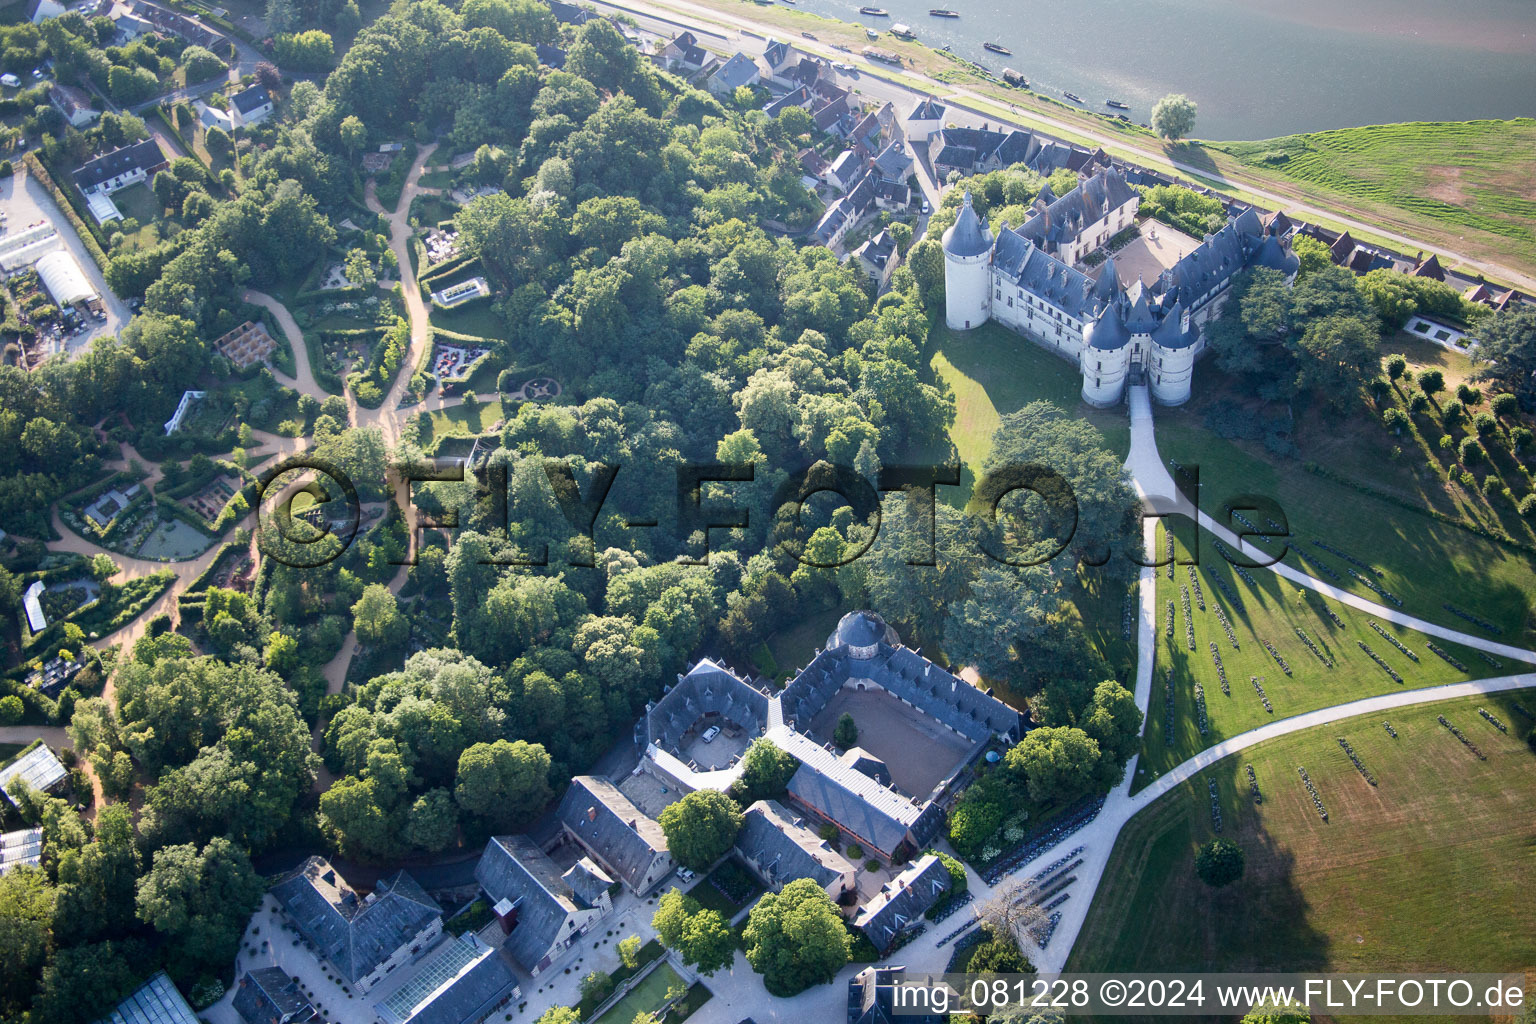 Vue aérienne de Ensemble châteaux du château de Chaumont à Chaumont-sur-Loire dans le département Loir et Cher, France